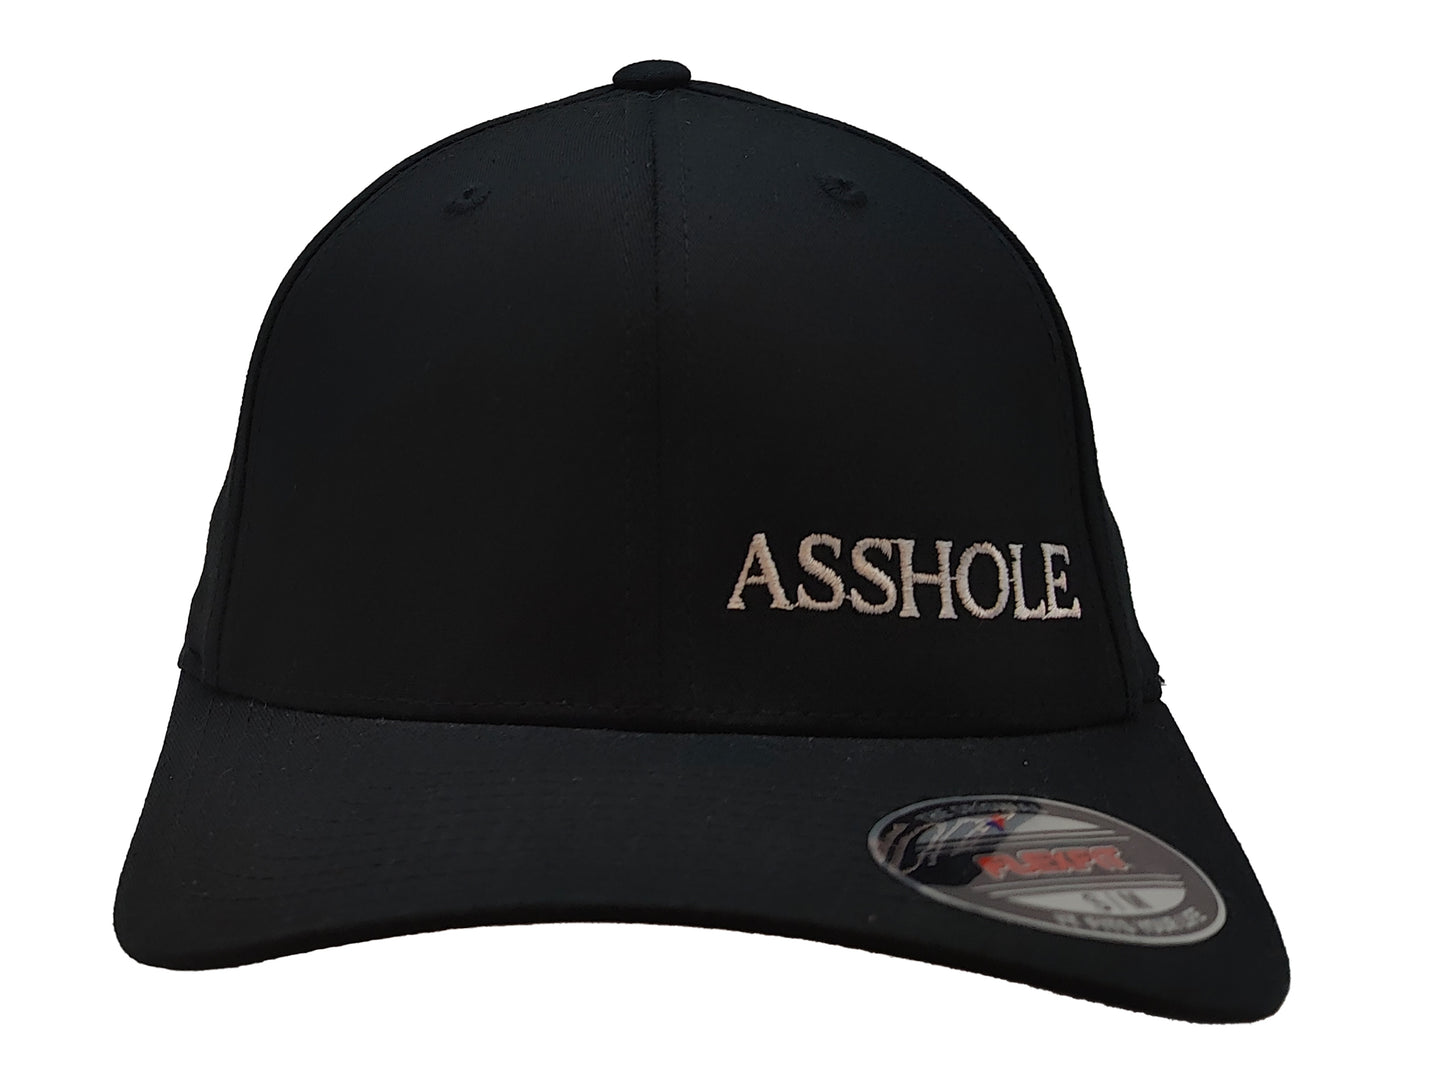 ASSHOLE FlexFit Adult Hat Black / White